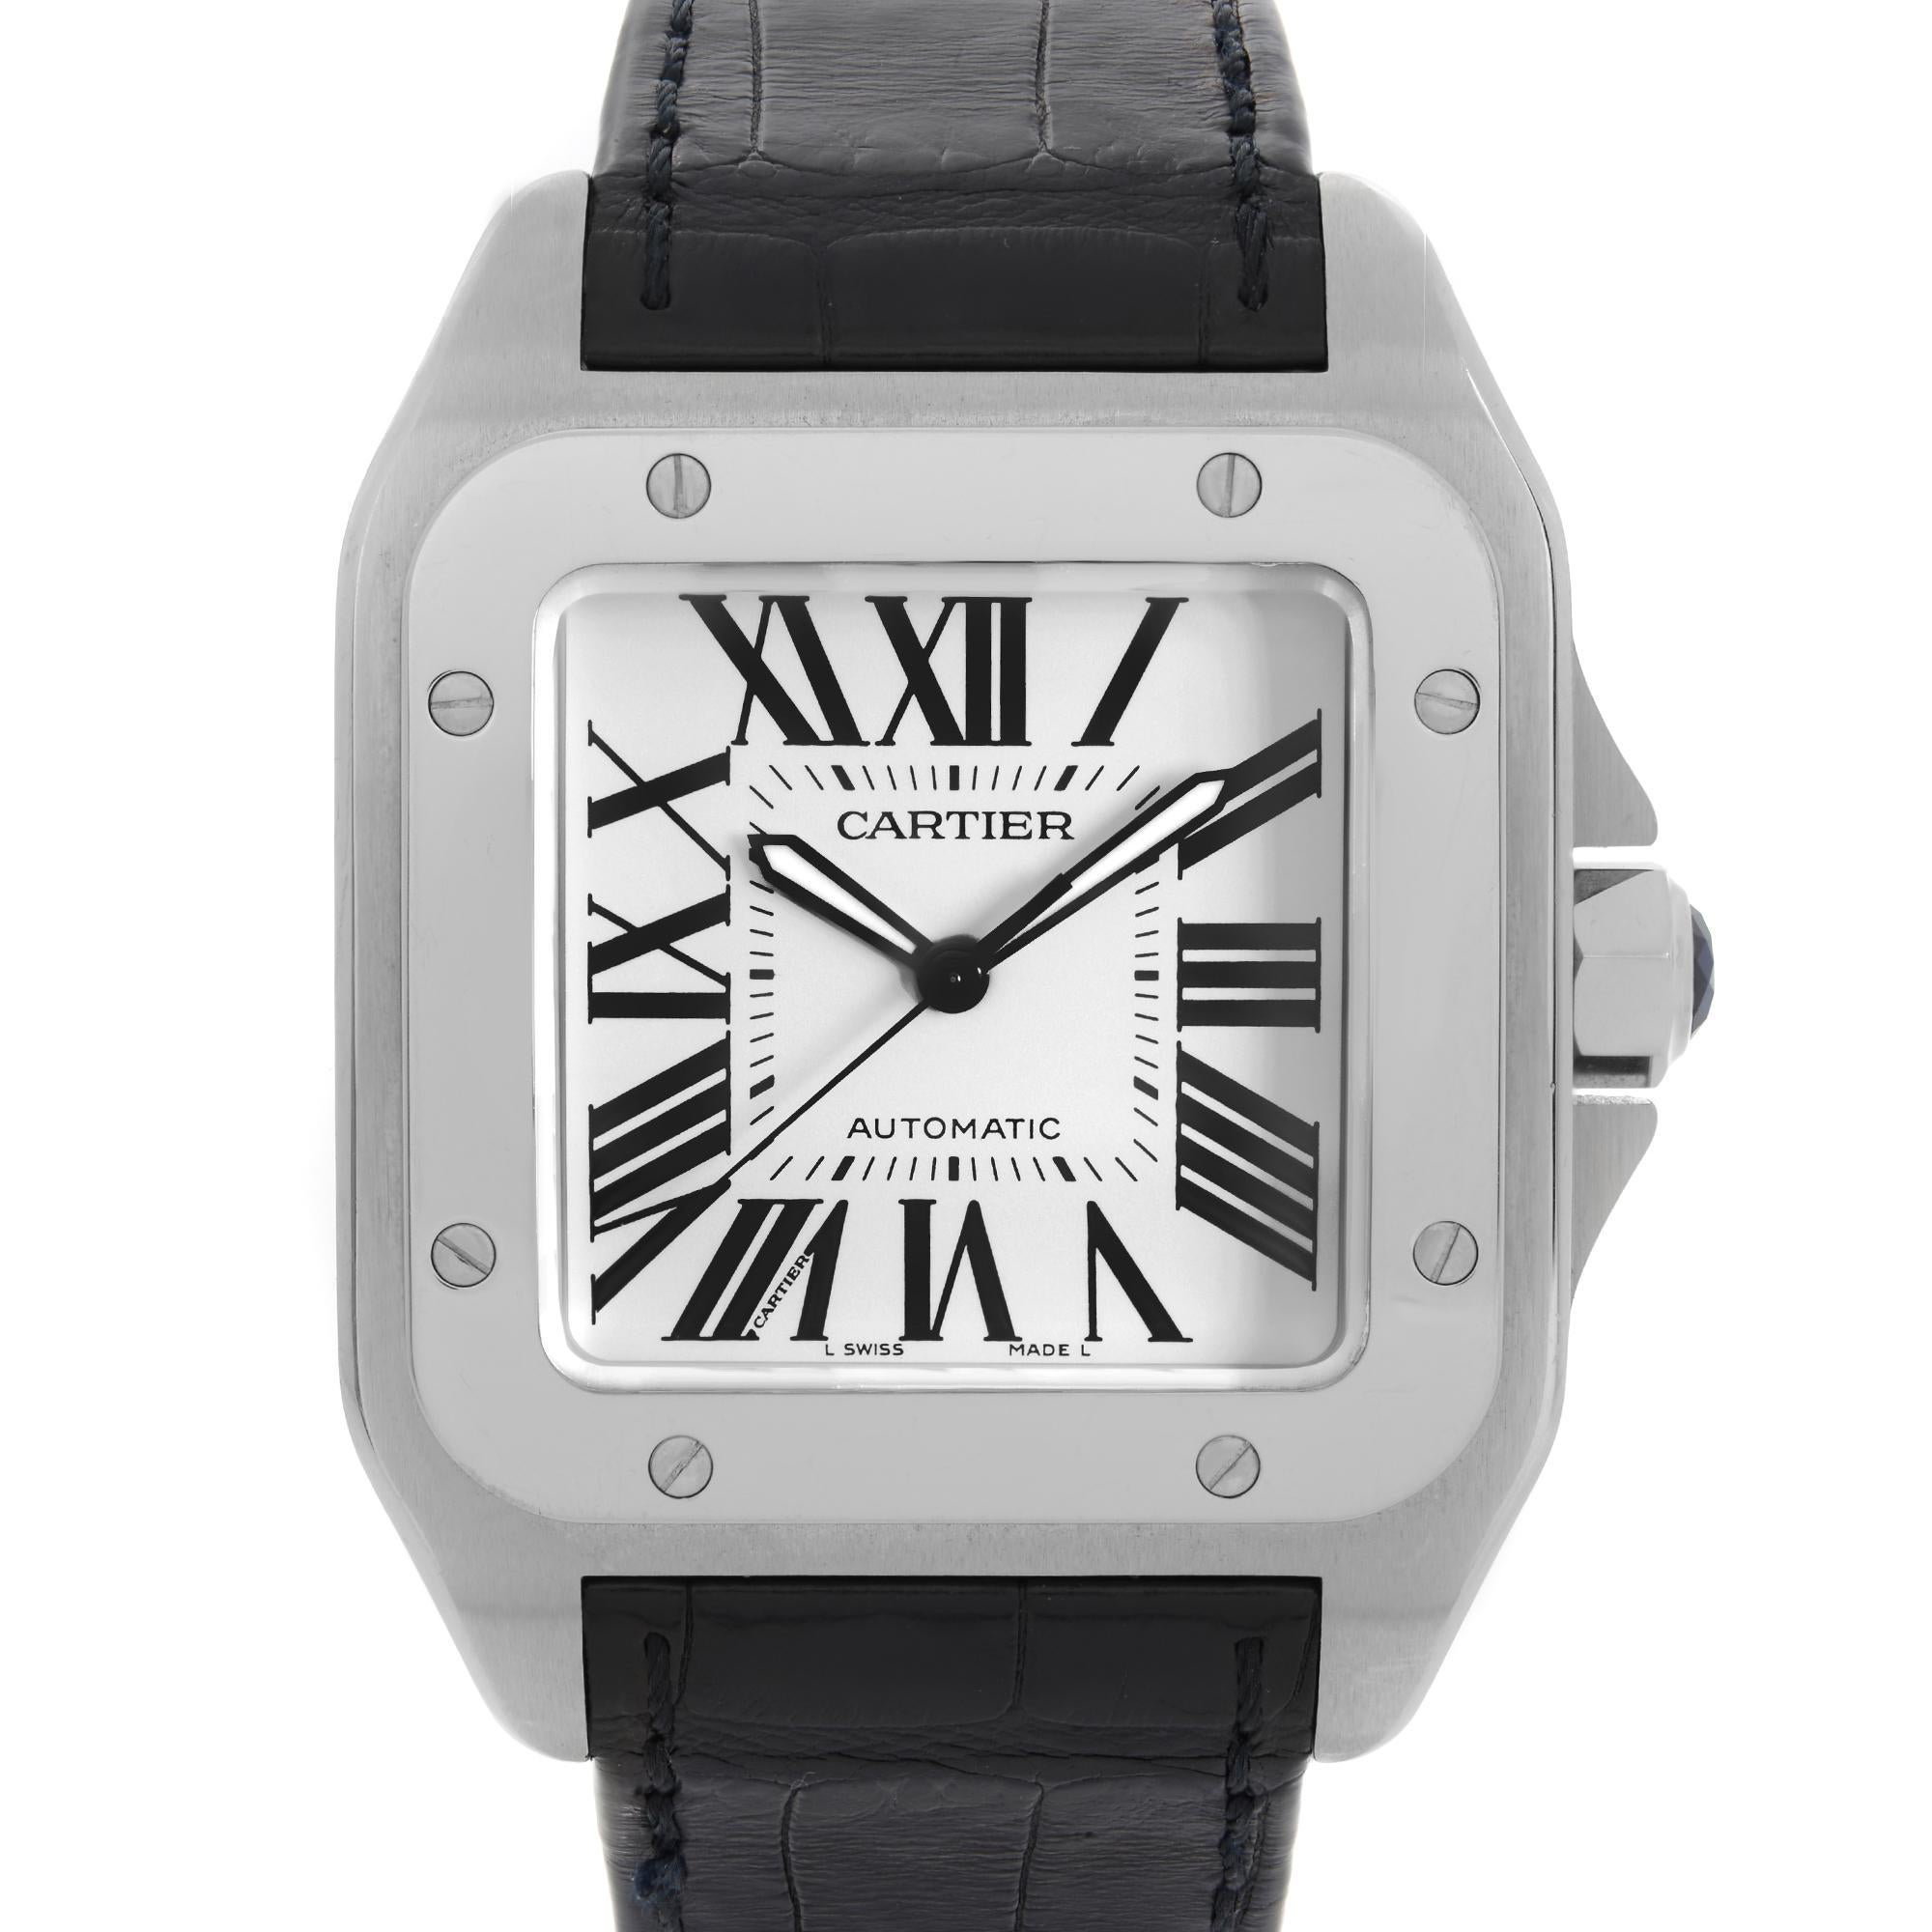 Preowned Cartier Santos 100 XL 38mm Stainless Steel White Roman Dial Automatic Men's Watch W20073X8  Ref-2656. Ce magnifique garde-temps est animé par un mouvement mécanique (automatique) et présente les caractéristiques suivantes : Boîtier en acier